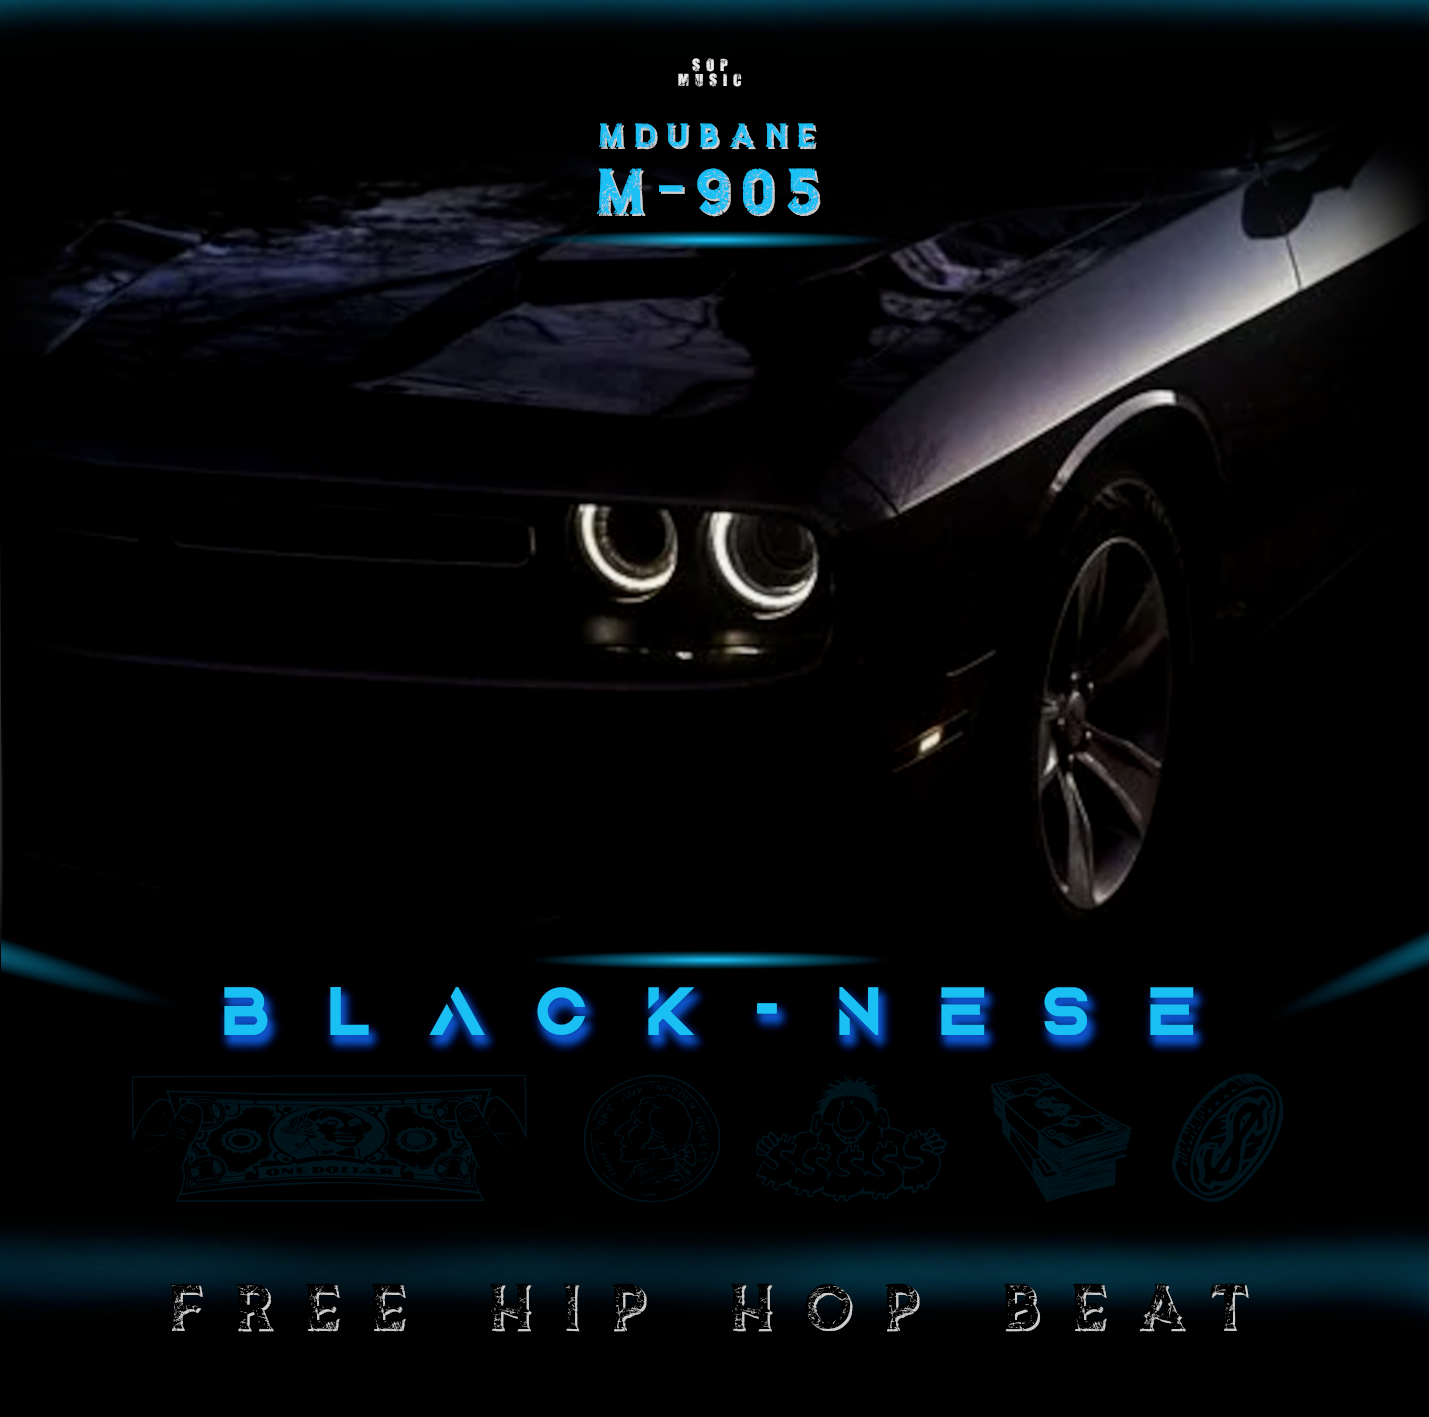 Black-nese Free Beat Image